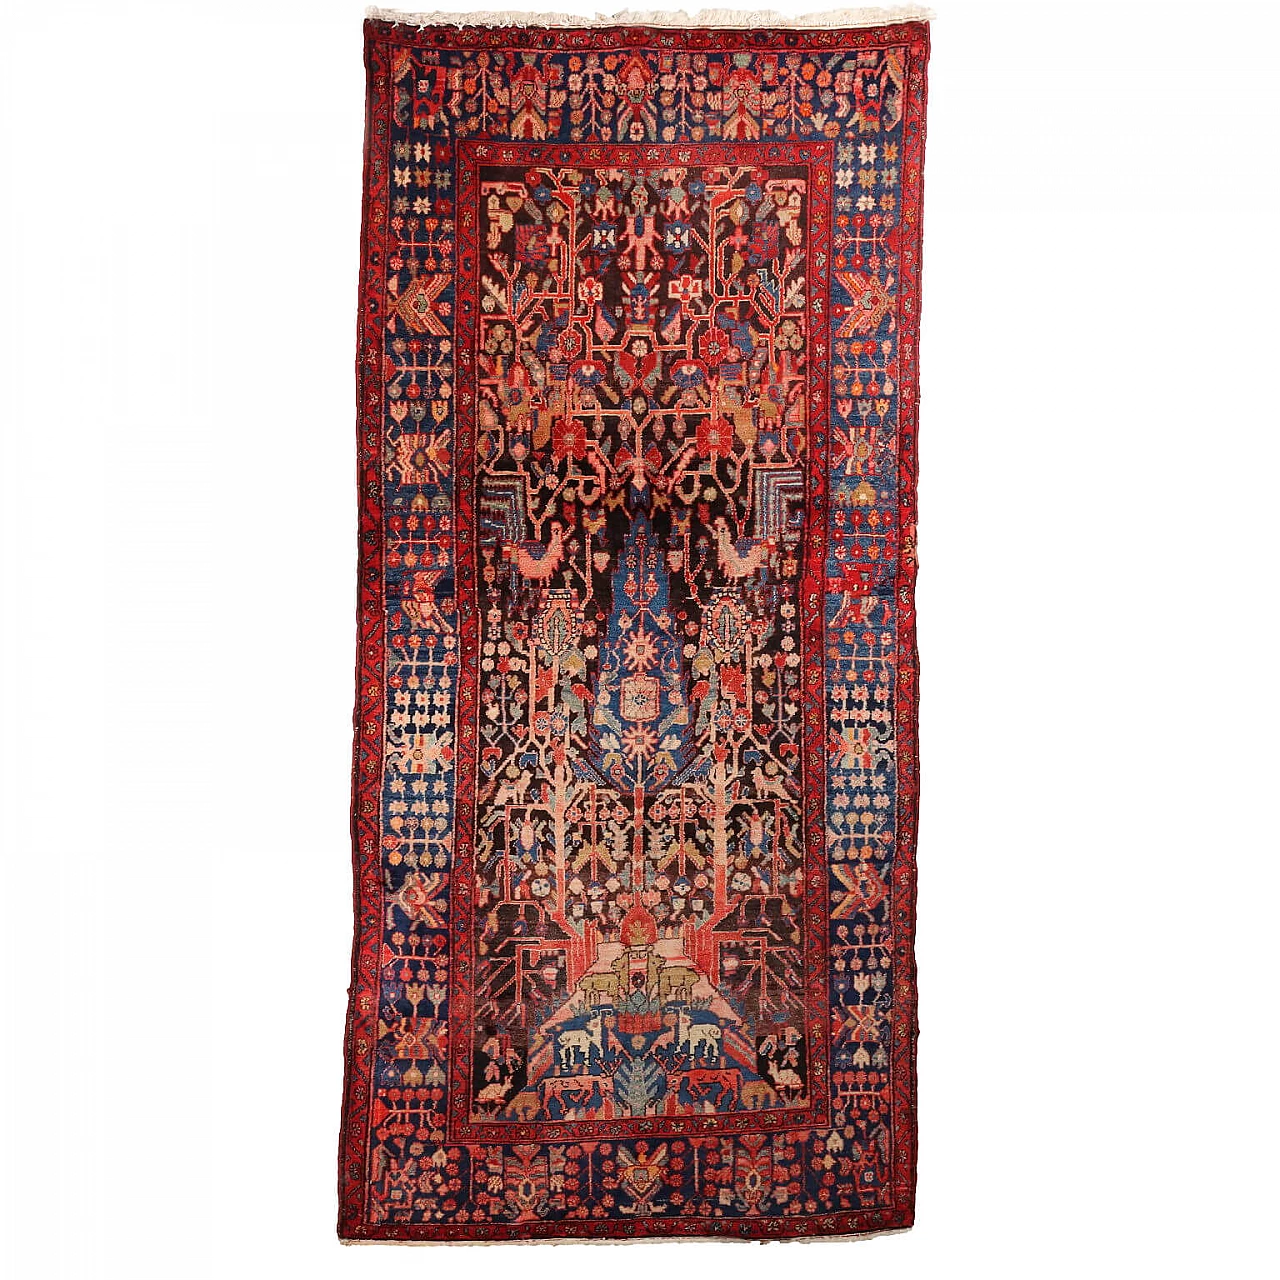 Iranian wool and cotton Malayer rug 1